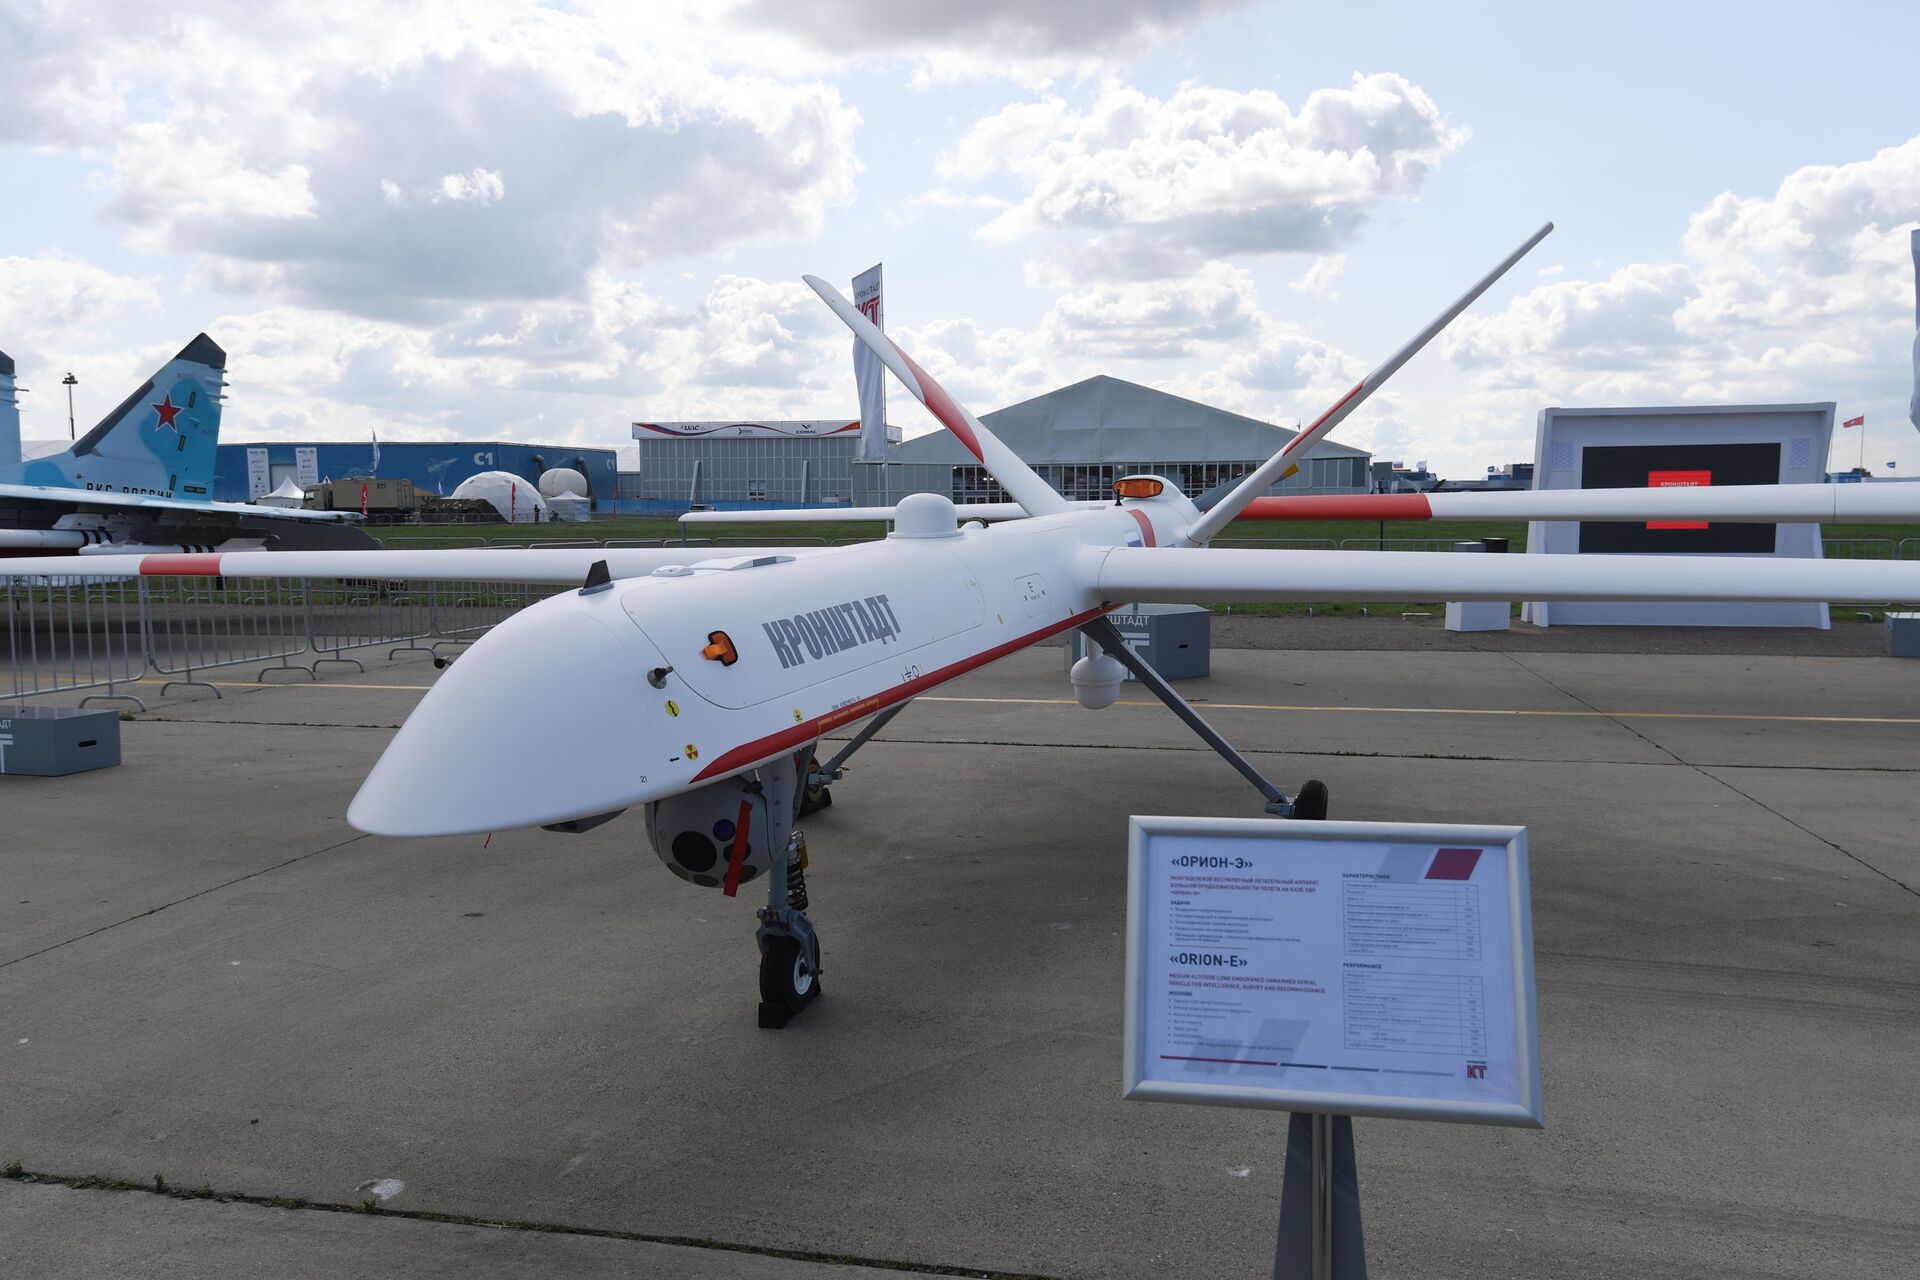 Rússia está desenvolvendo sistema único de armamento para drones atuais e futuros - Sputnik Brasil, 1920, 14.04.2021